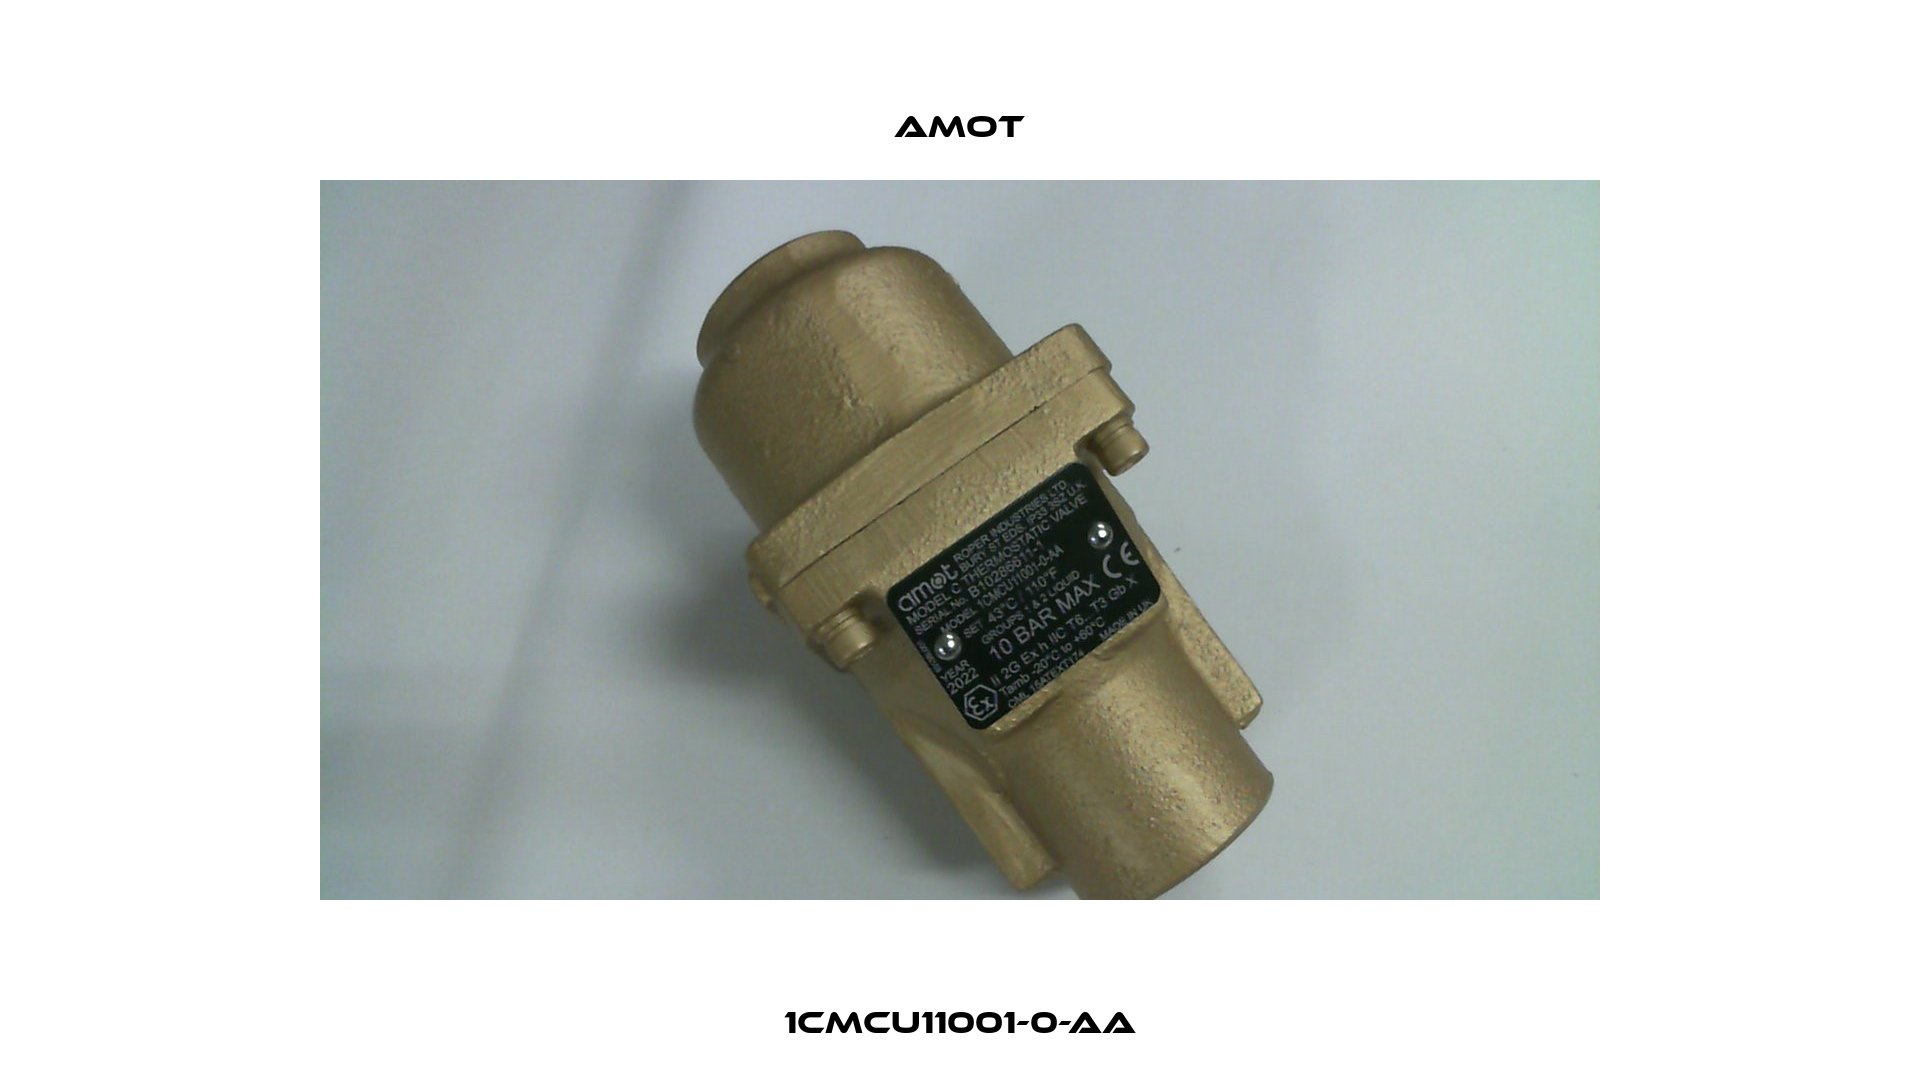 1CMCU11001-0-AA Amot